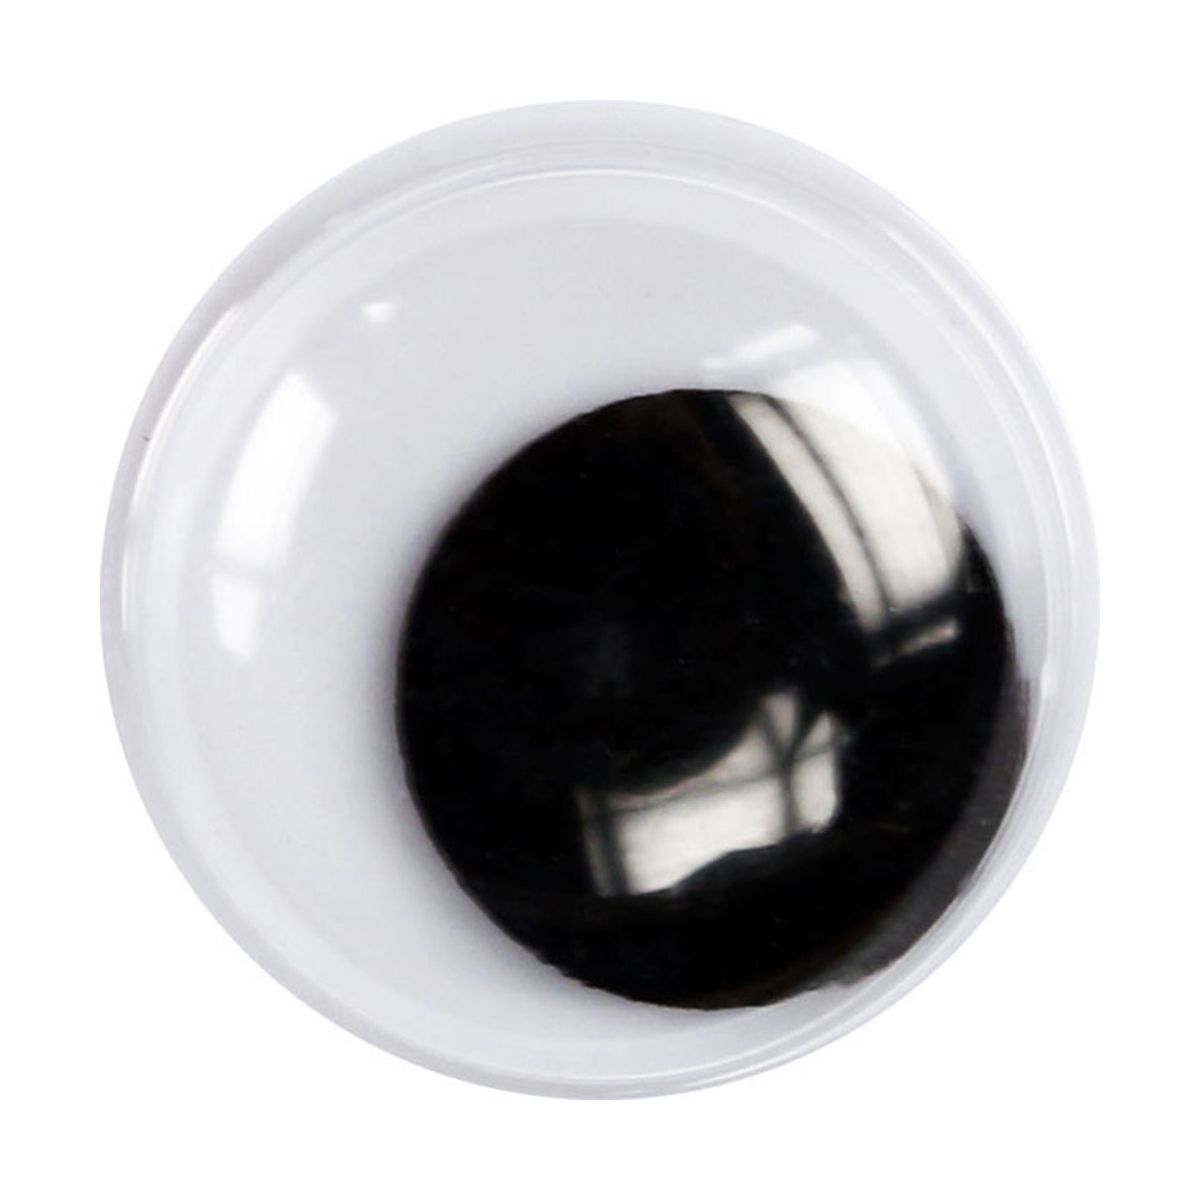 Oczy Titanum Craft-Fun Series ruchome 10mm